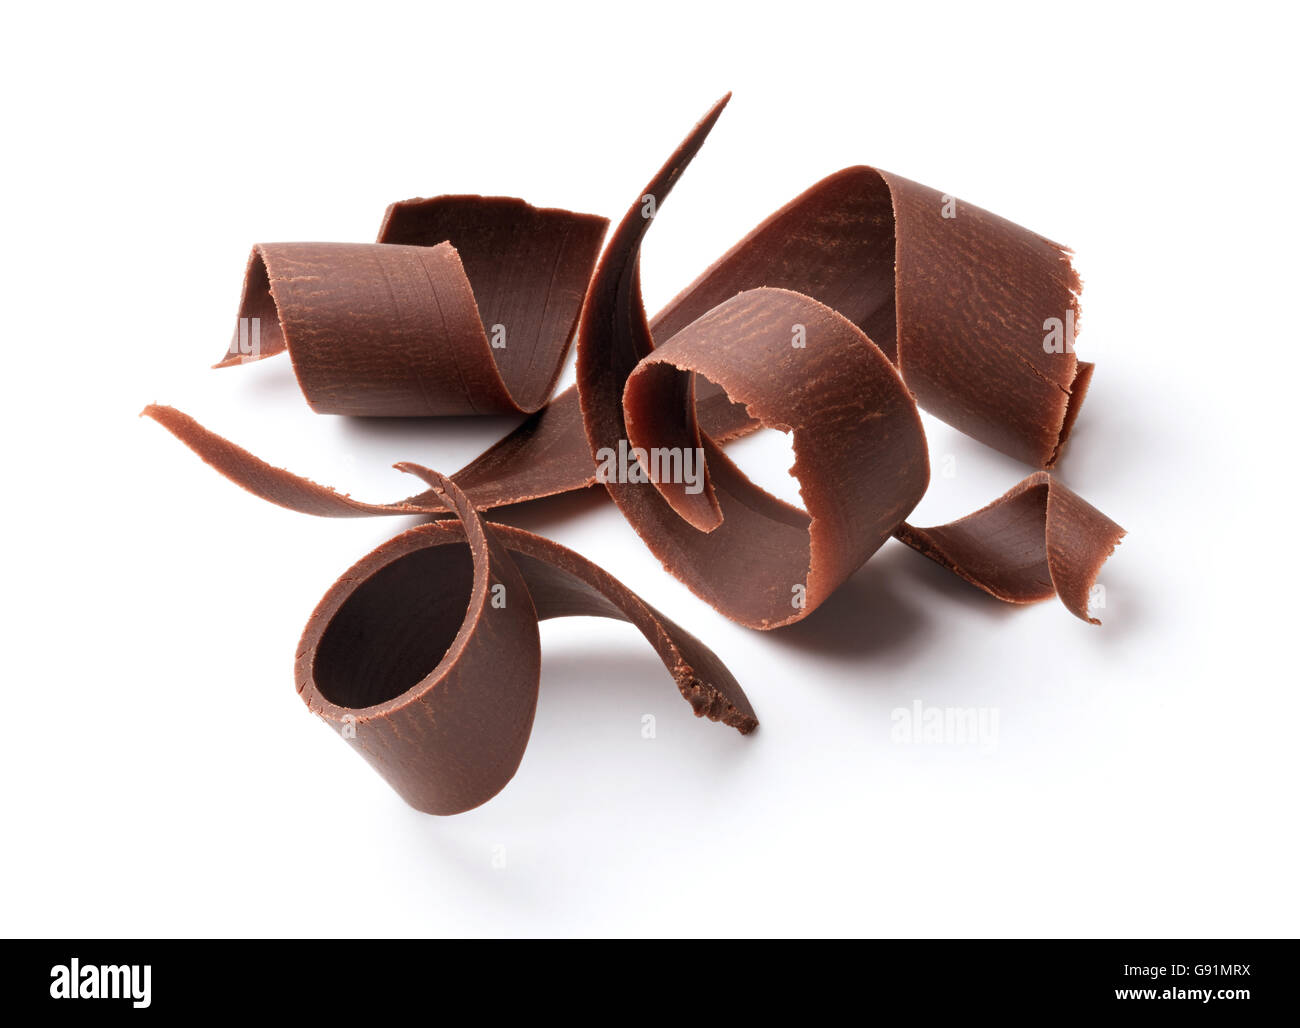 Gruppo di cioccolato fondente trucioli isolato su bianco Foto Stock